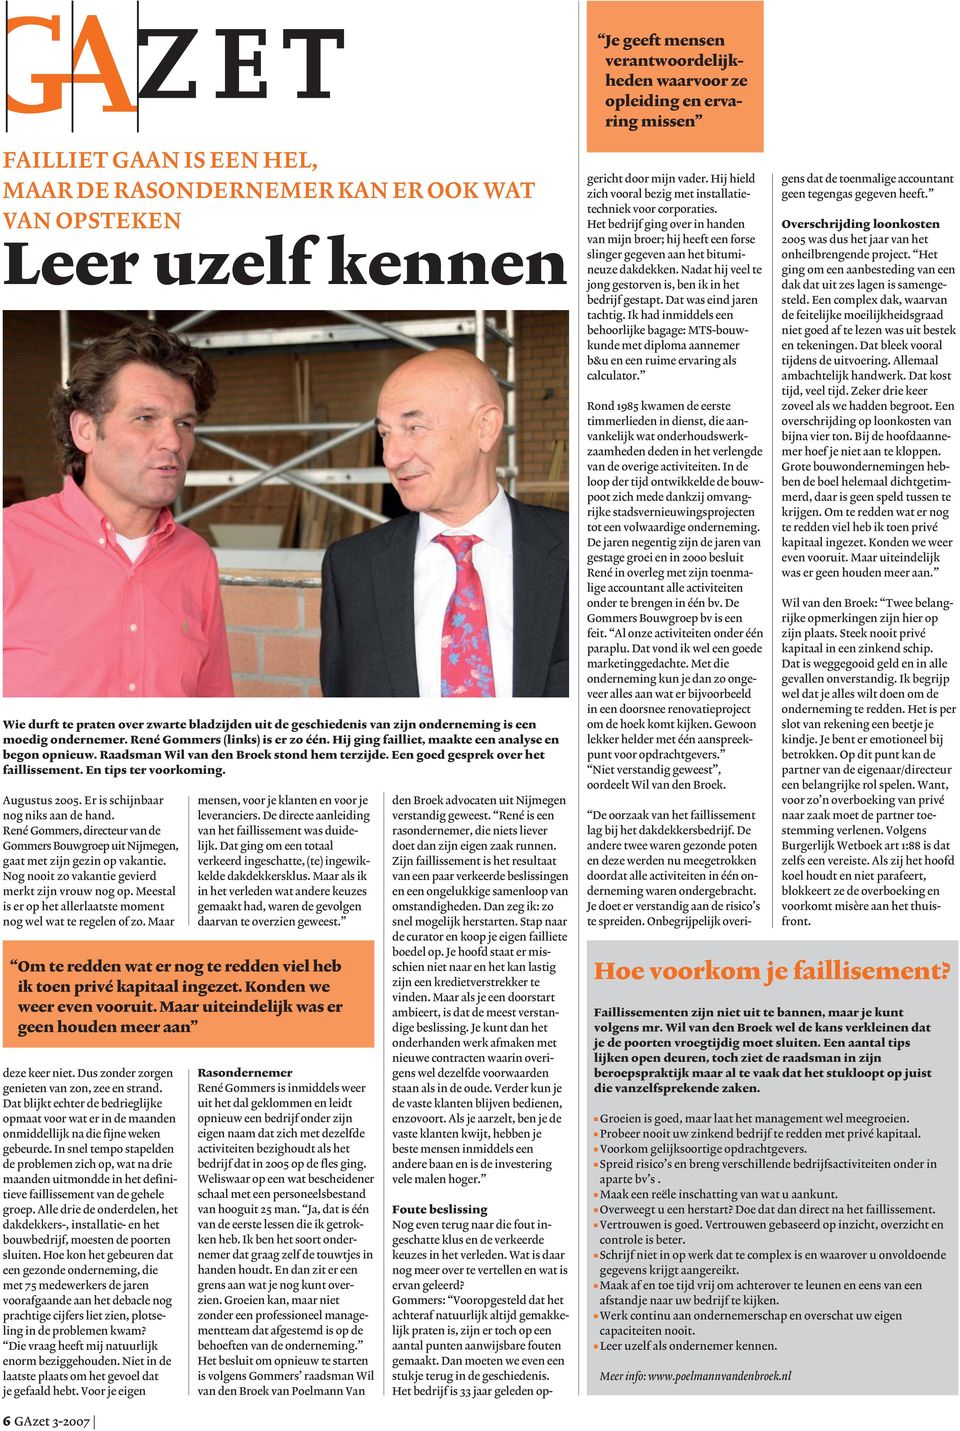 Raadsman Wil van den Broek stond hem terzijde. Een goed gesprek over het faillissement. En tips ter voorkoming. Augustus 2005. Er is schijnbaar nog niks aan de hand.